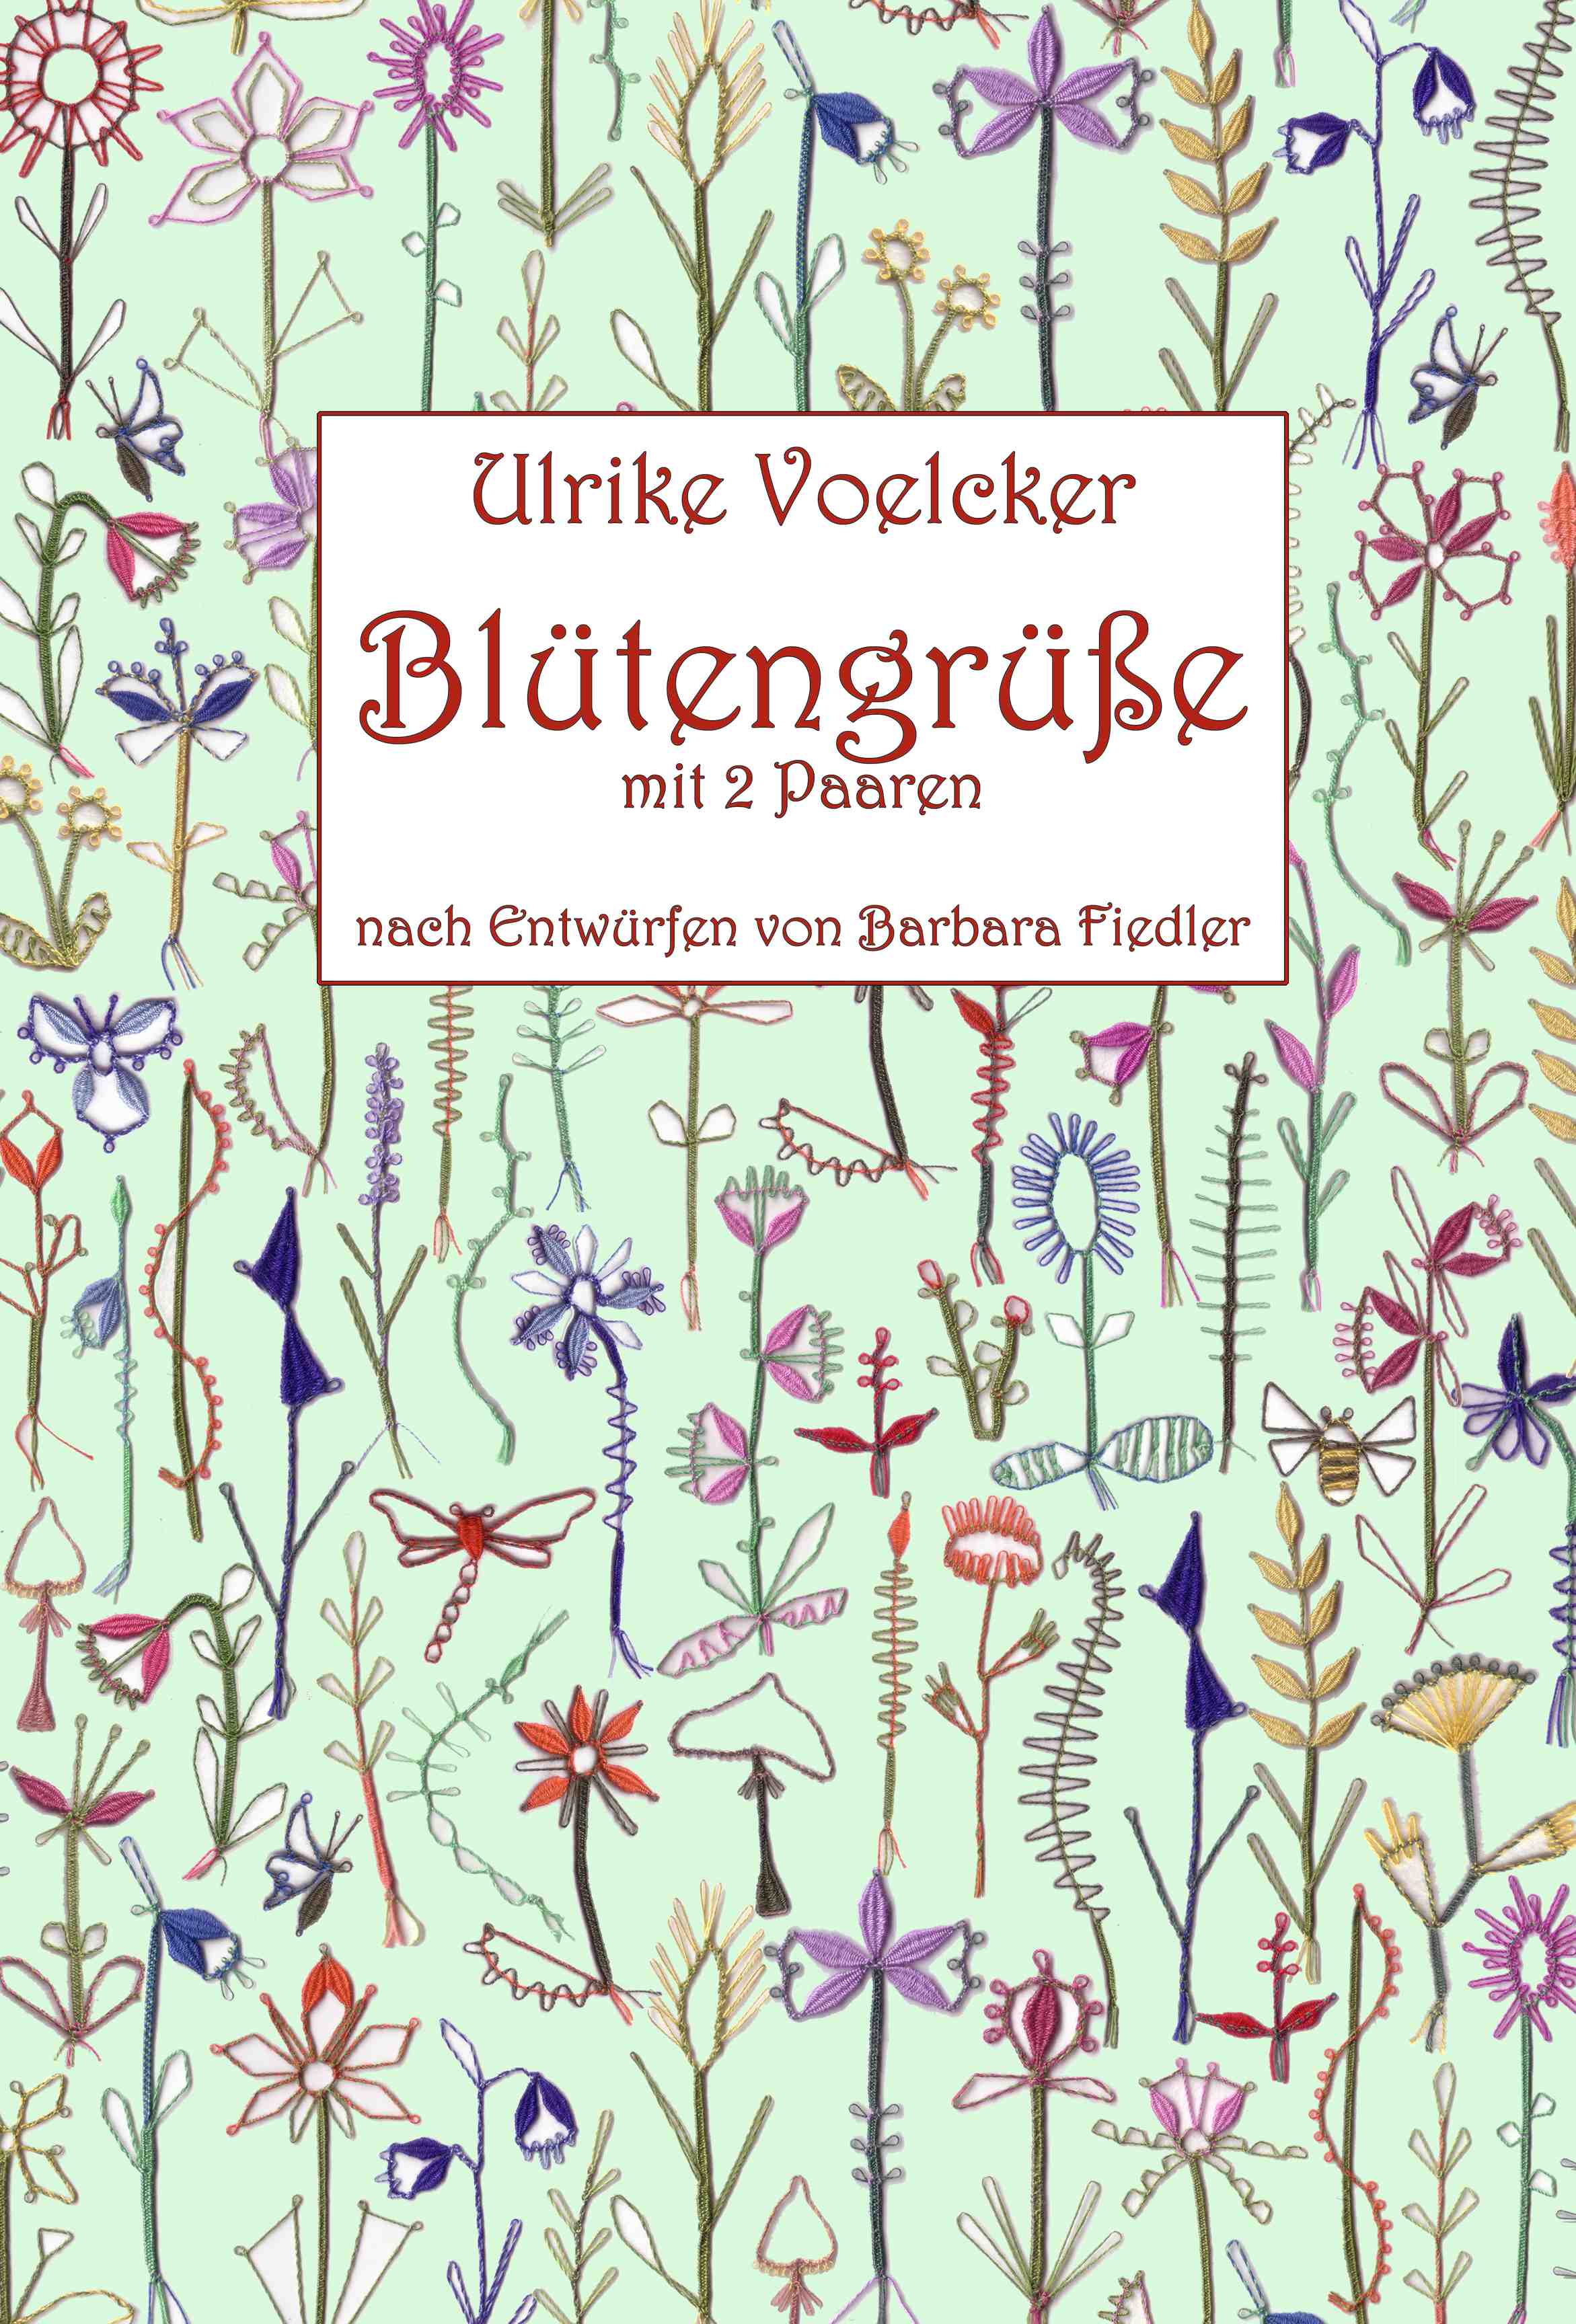 Bltengre mit 2 Paaren by Ulrike Voelcker